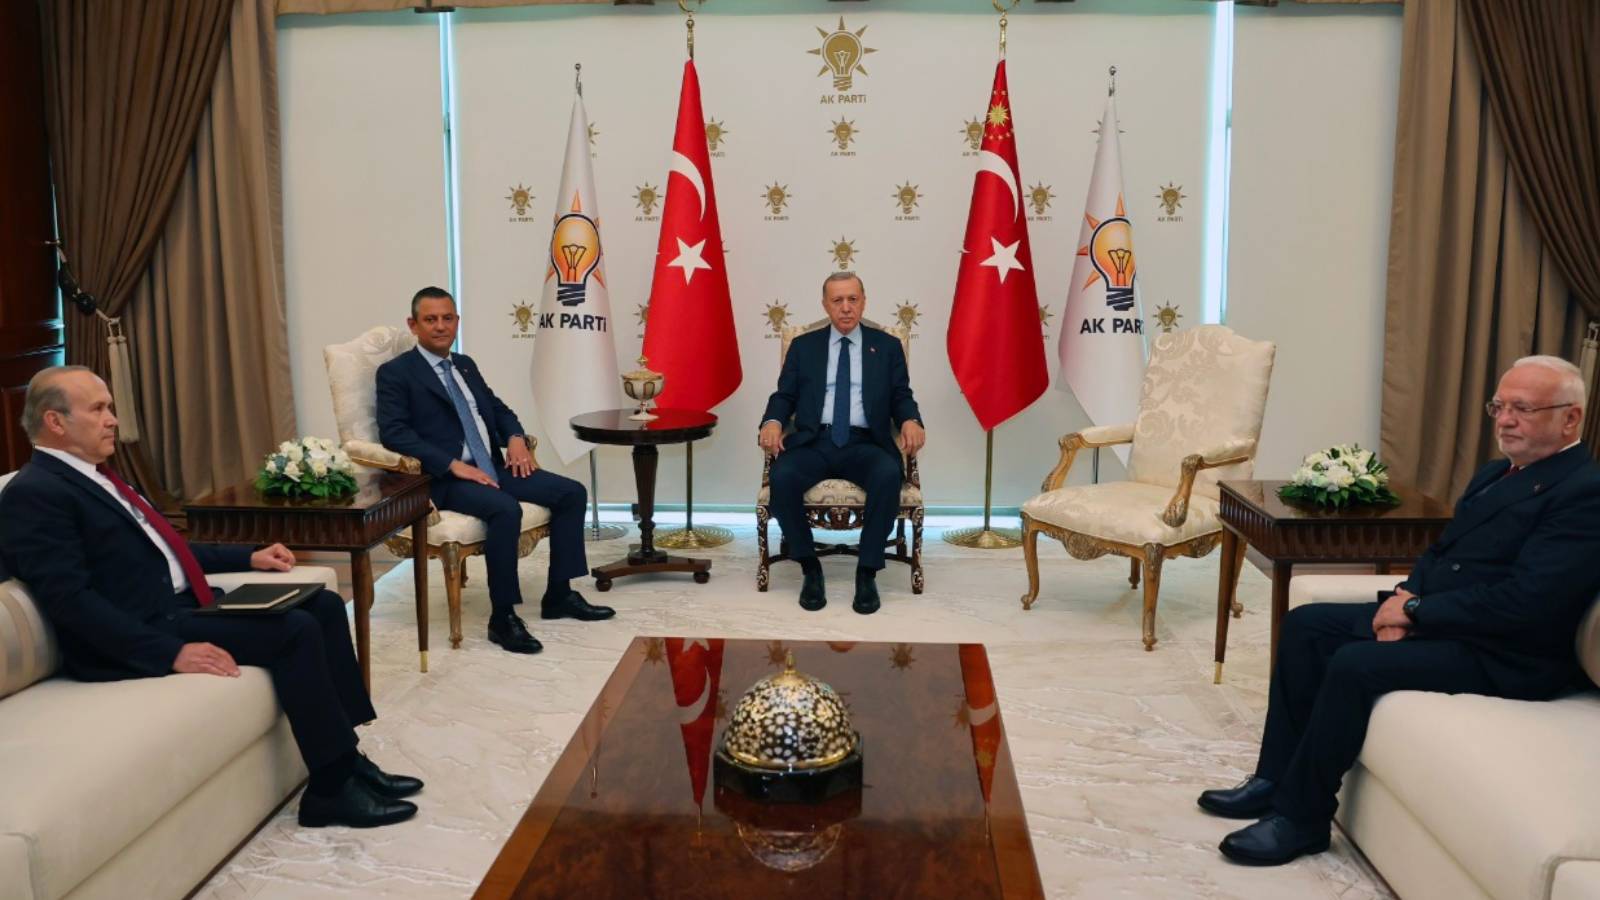 Özel'den Erdoğan'la görüşme sonrası ilk açıklama: 'İyimserim'